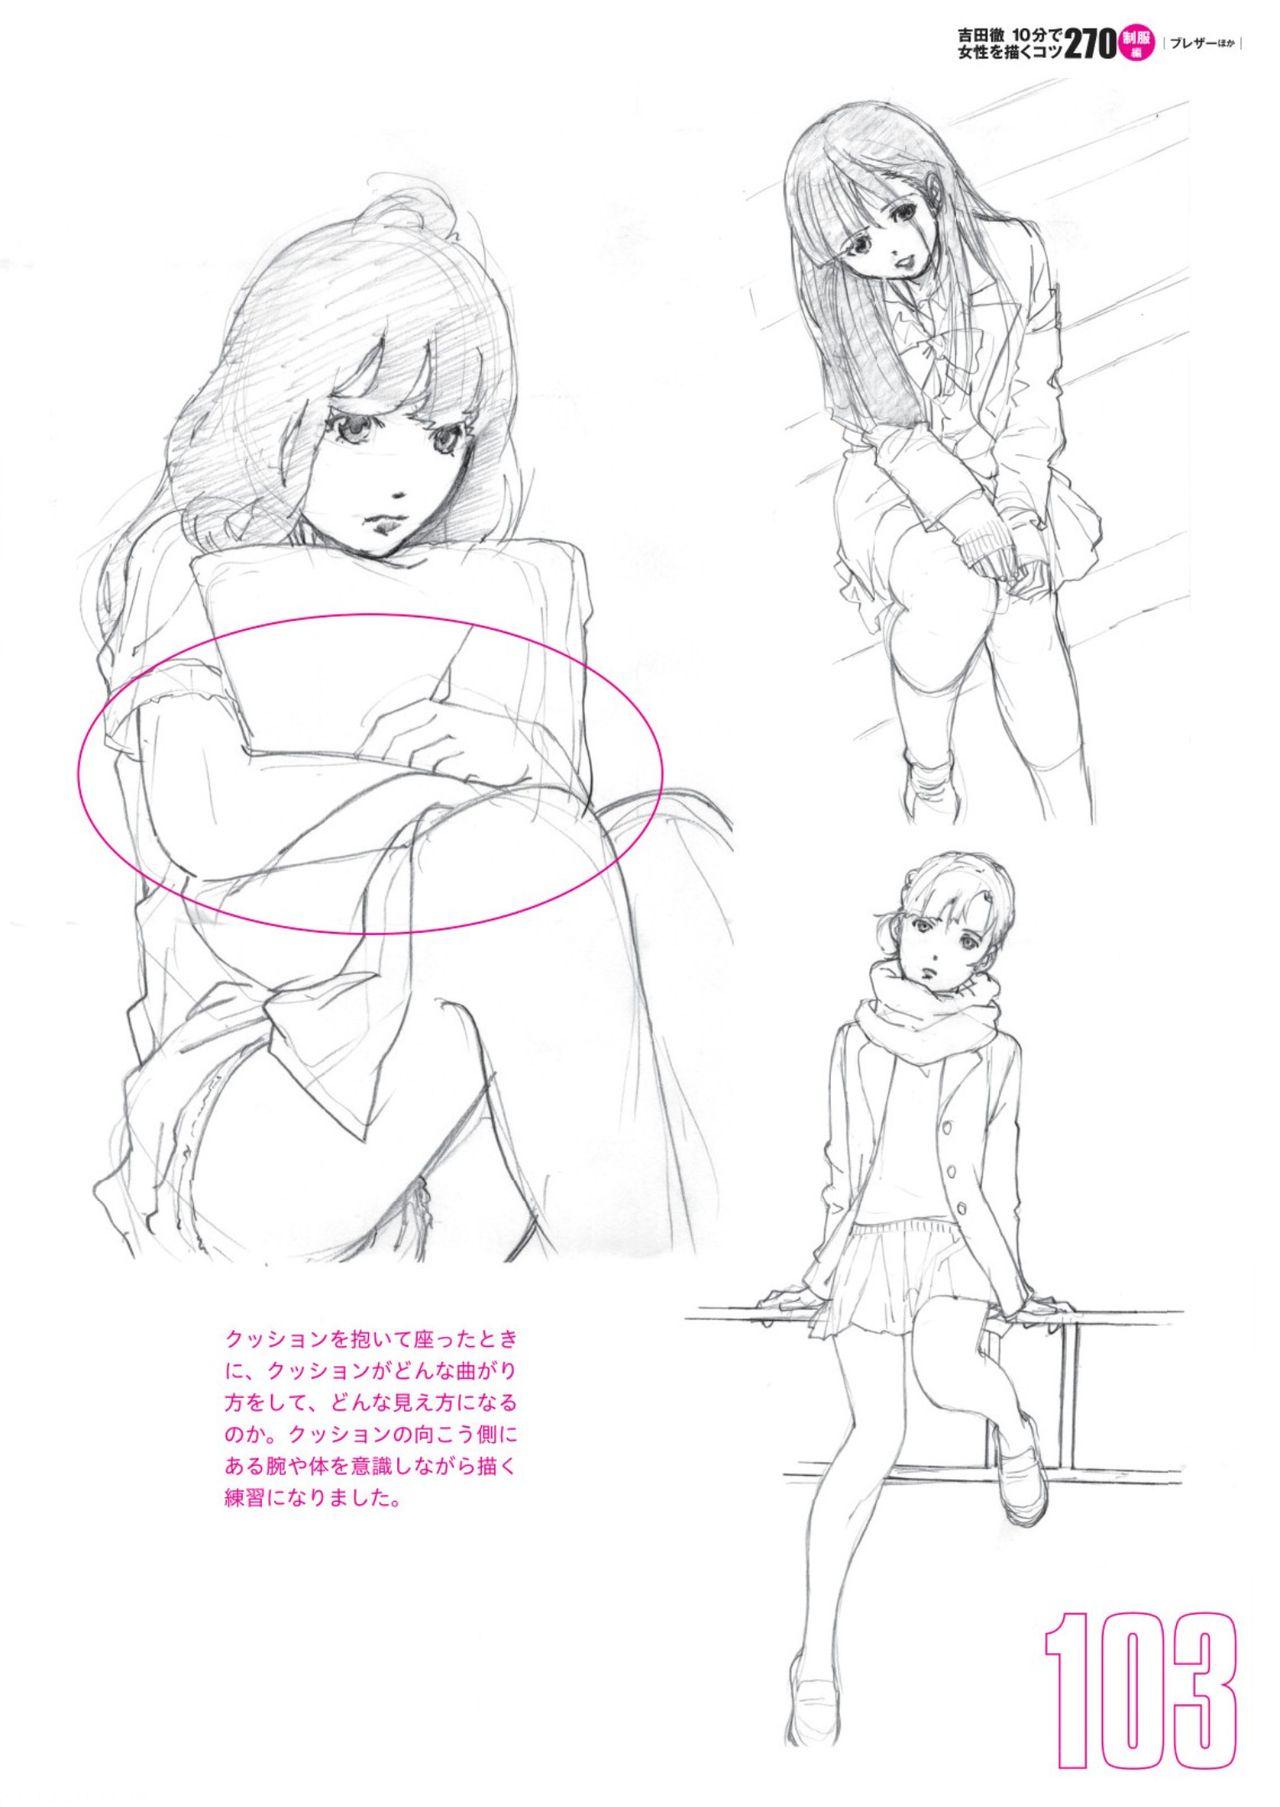 Toru Yoshida Tips for drawing women in 10 minutes 270 Uniforms 104